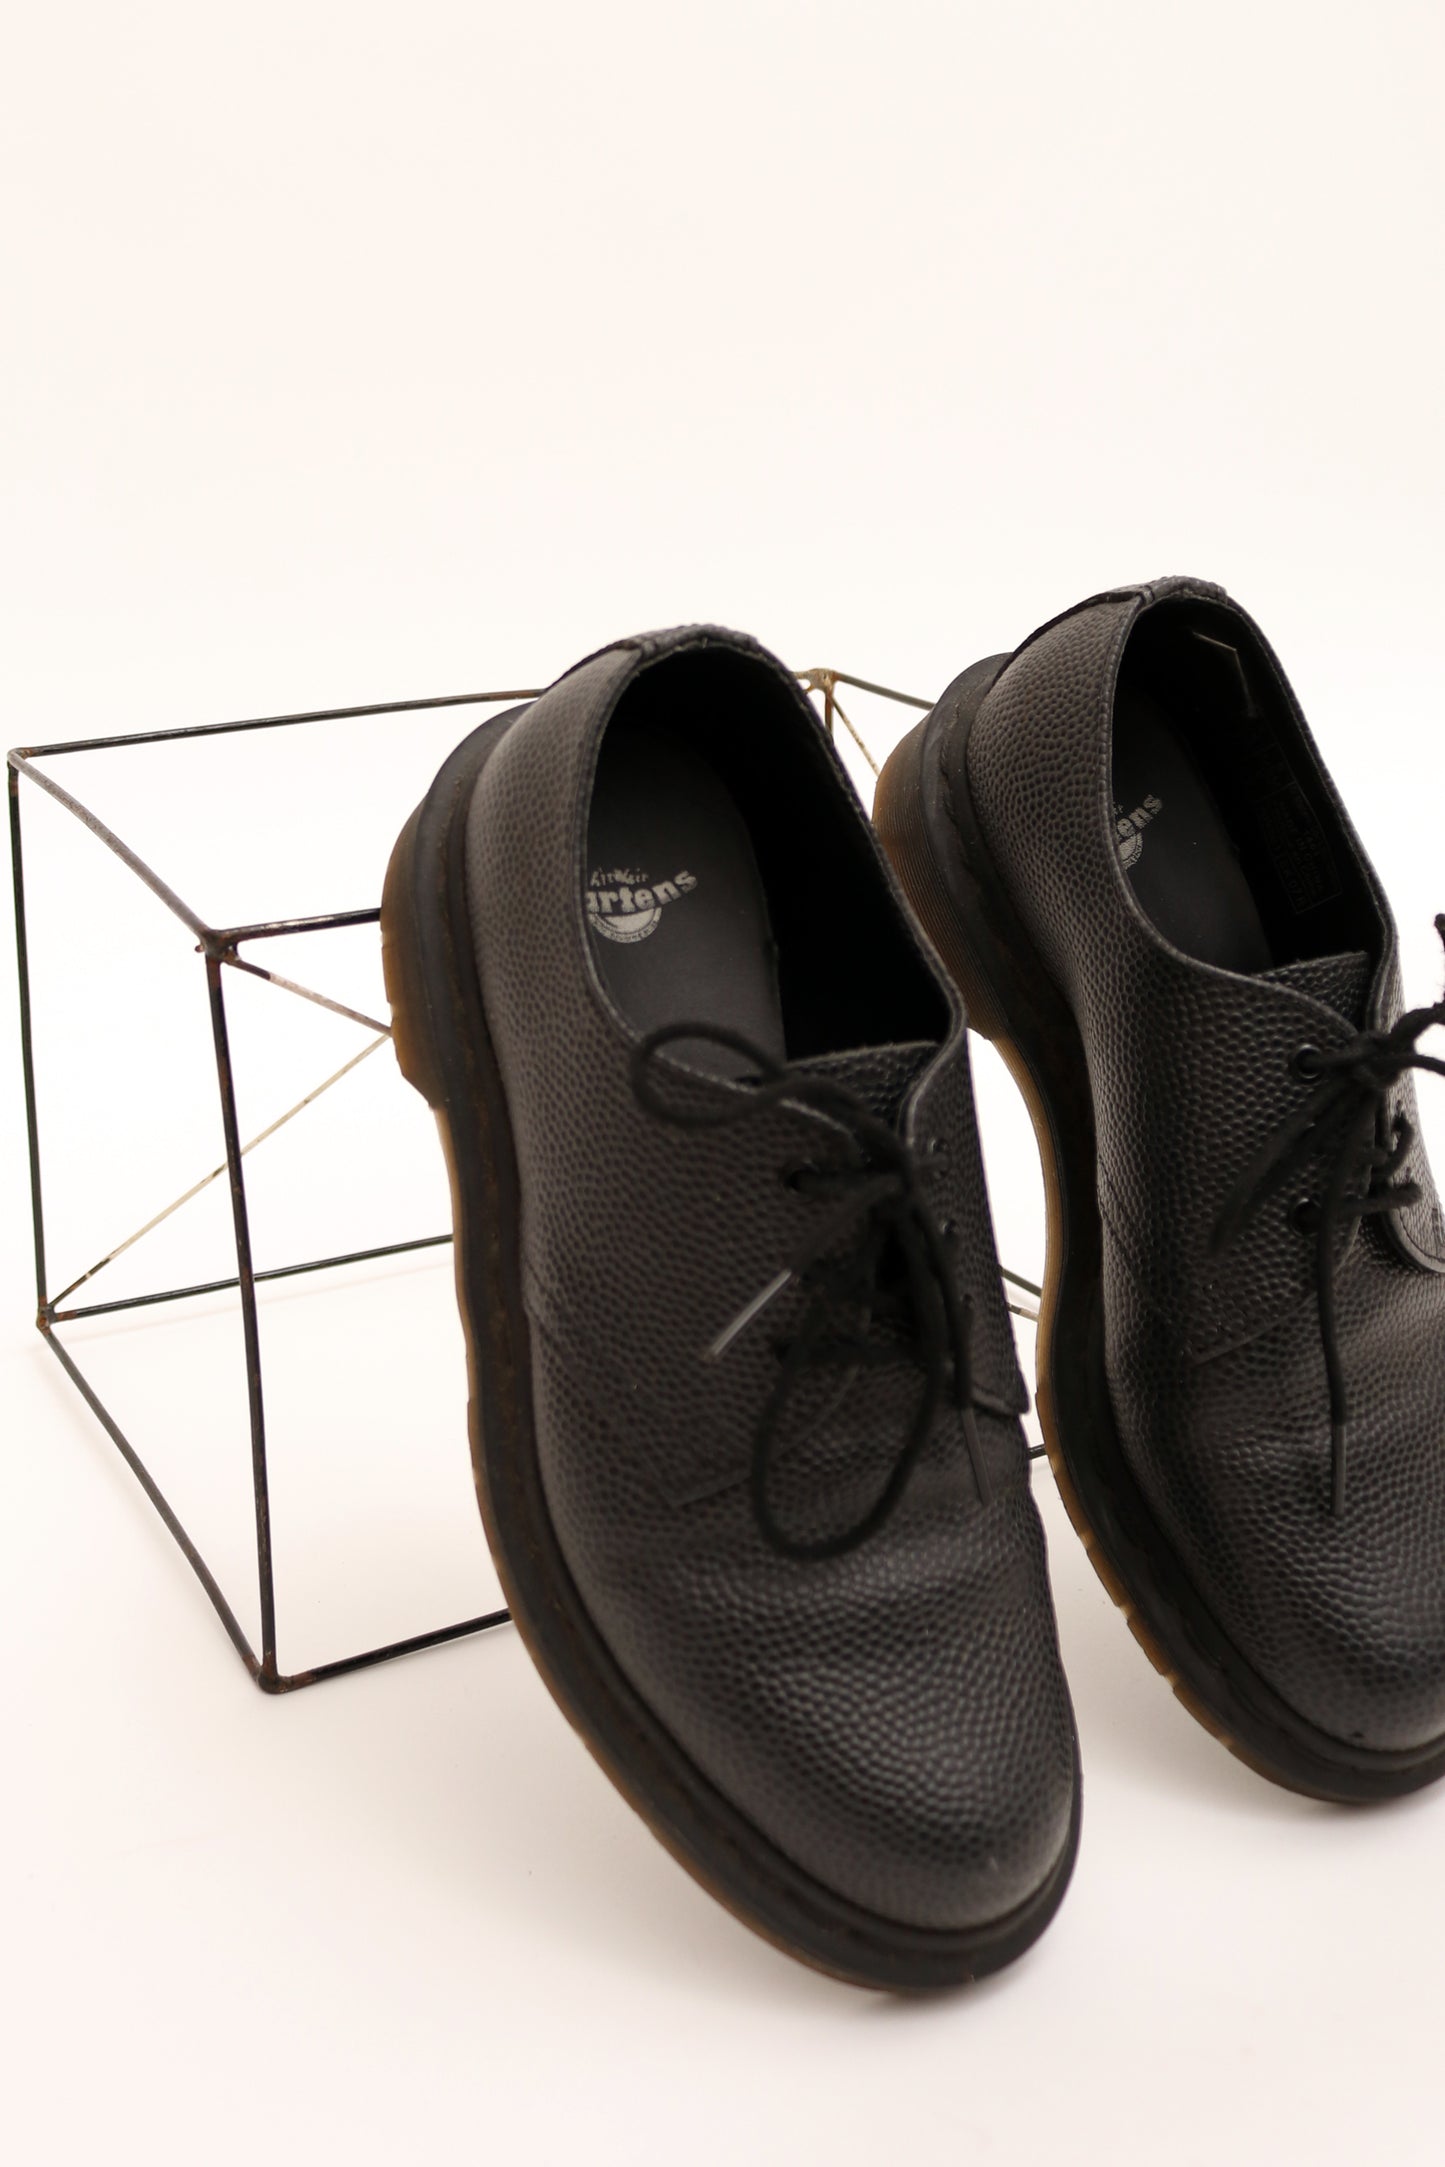 Dr Martens 1461 Pebble Leather Lace-up Shoes